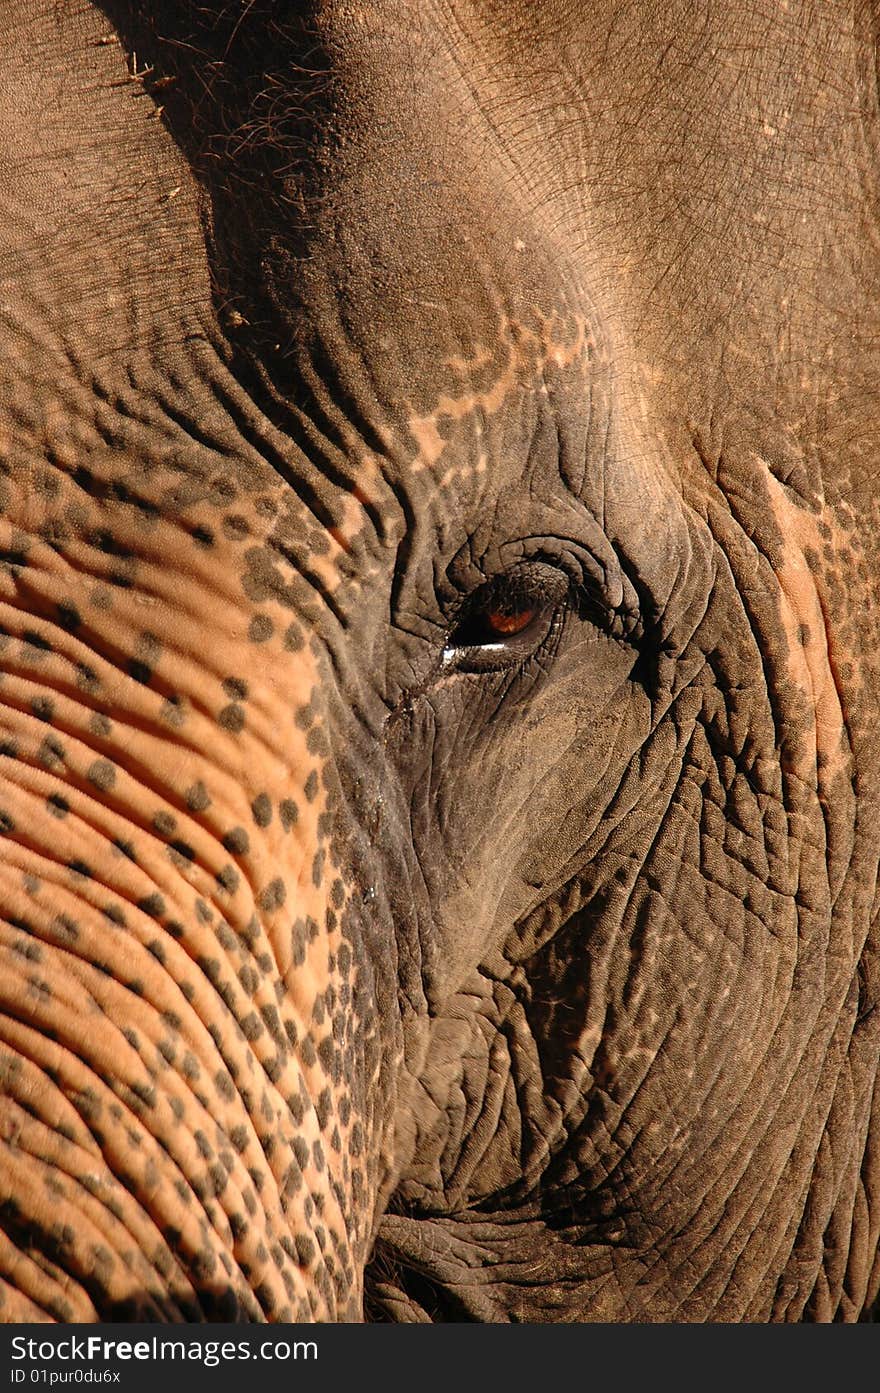 Head of an elephant. Thailand.